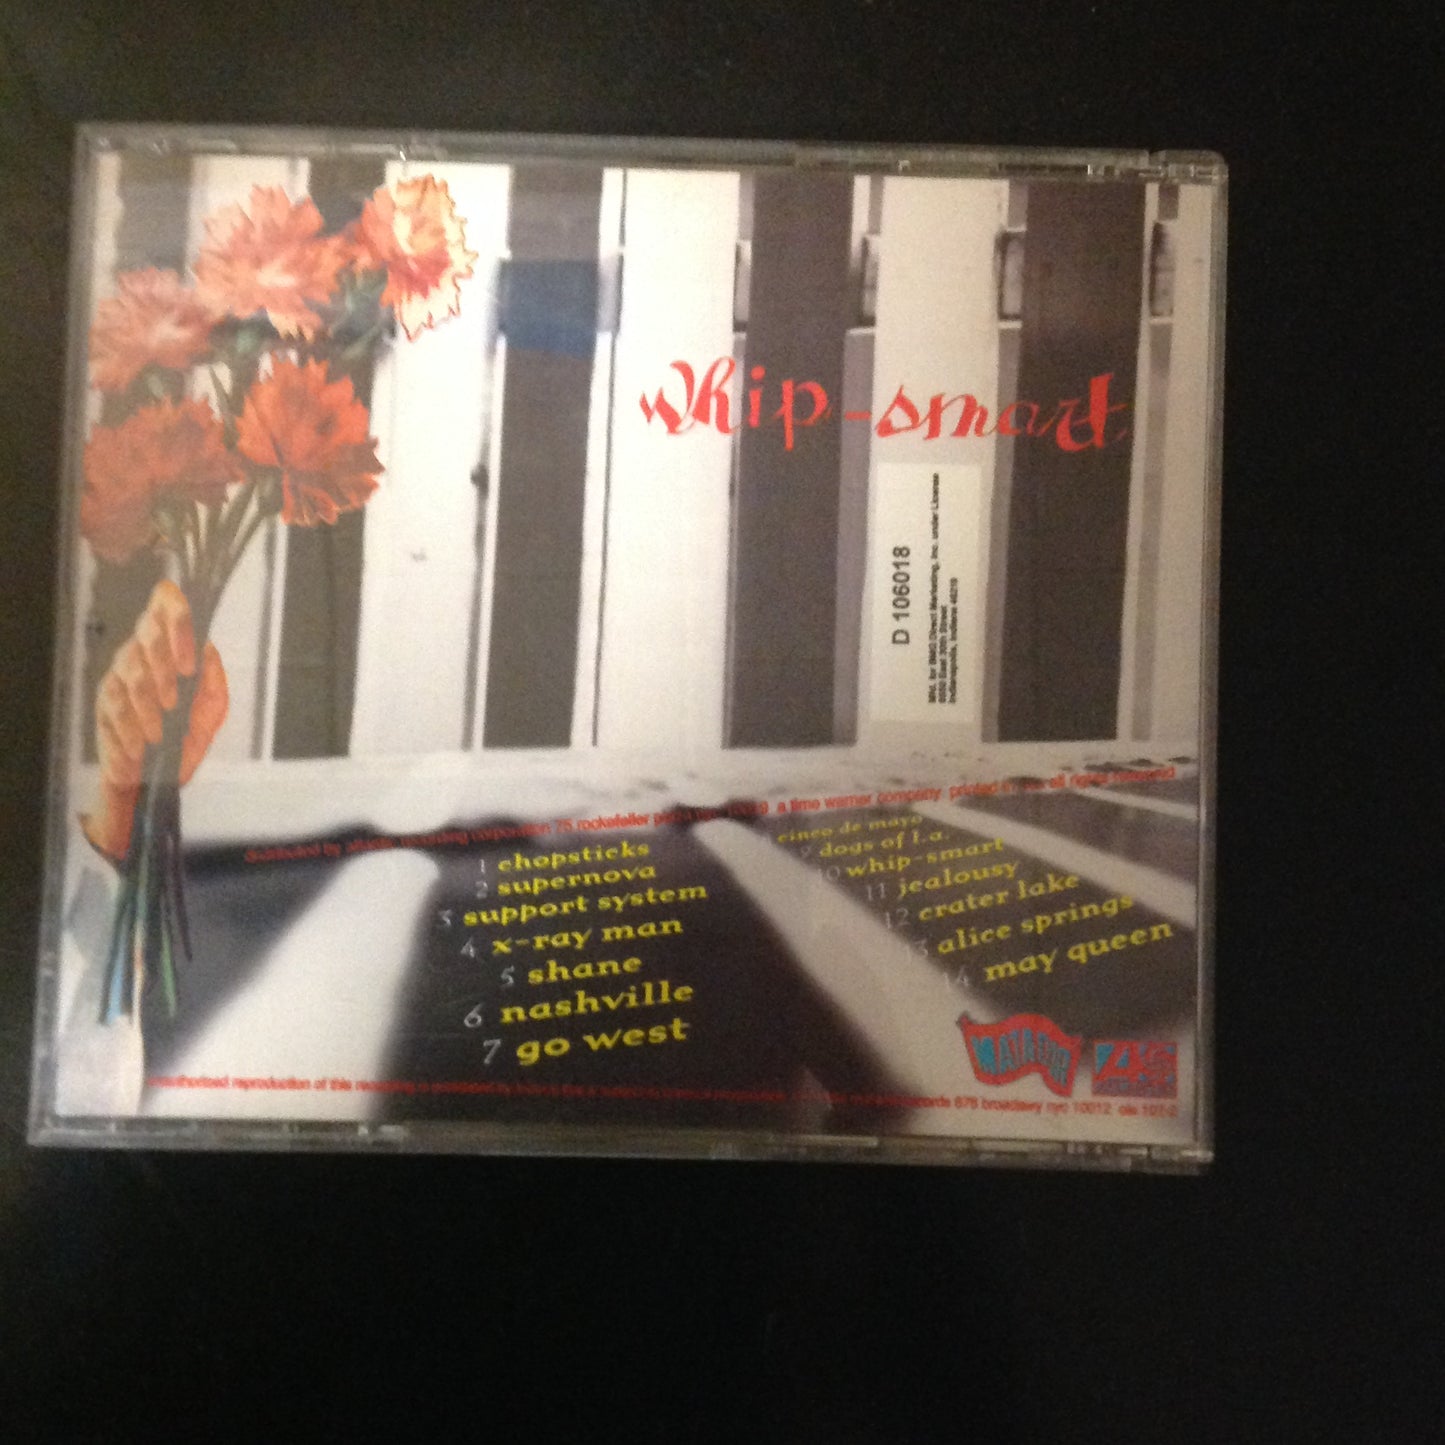 CD Liz Phair Whip-Smart Matador 92429-2 1994 Indie Rock